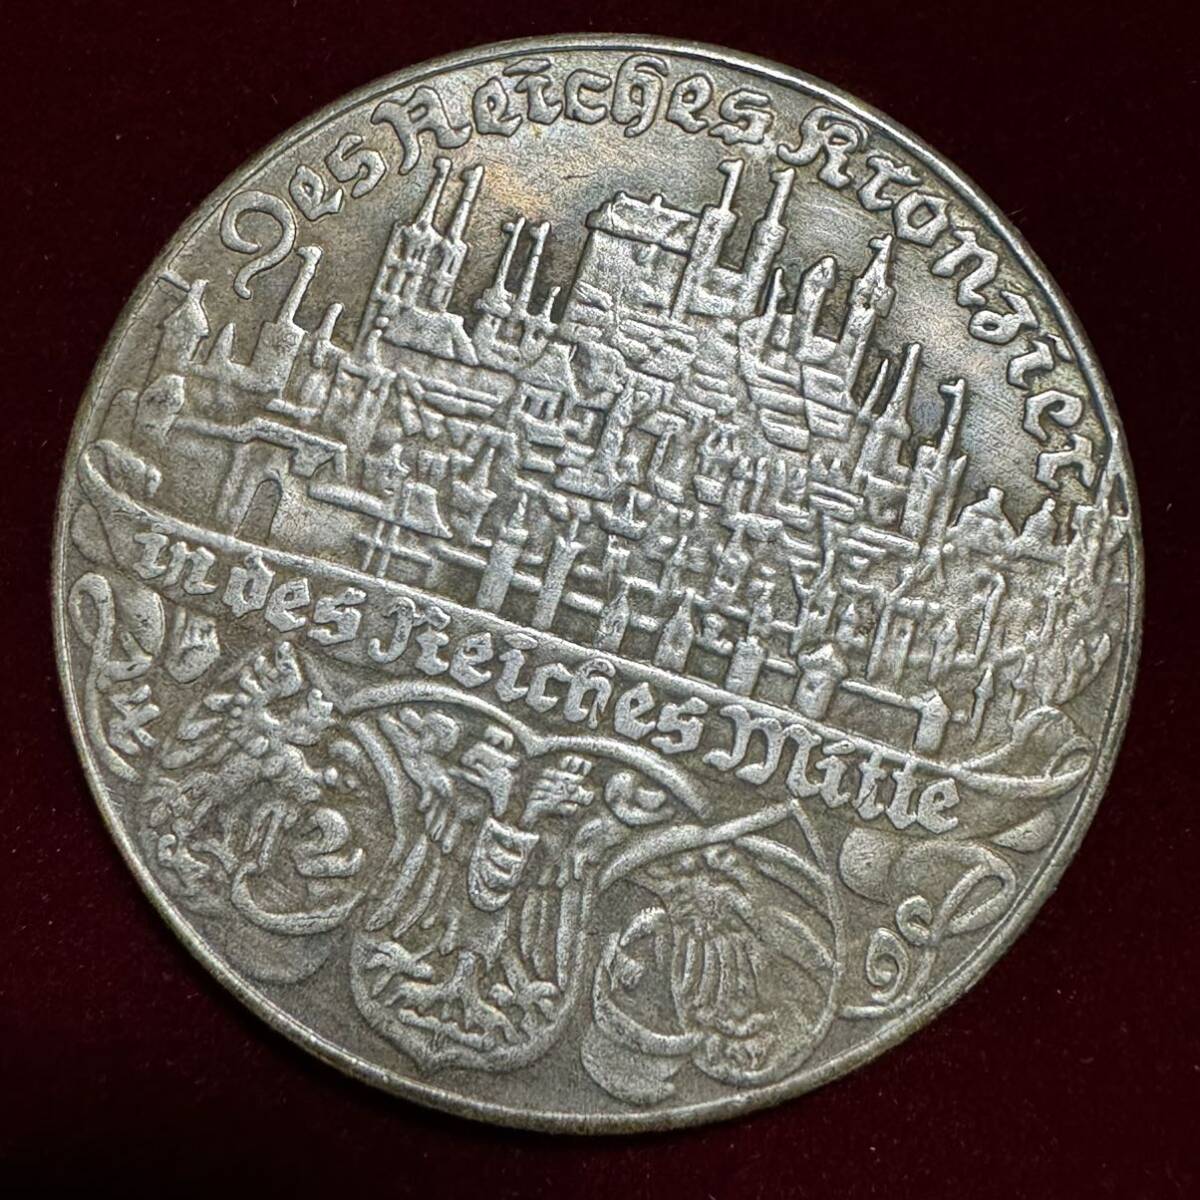 ドイツ ニュルンベルクの街 硬貨 古銭 1938年 オーストリア併合 剣 帝国の鷲 紋章 クラウン 花輪 コイン 銀貨 外国古銭 海外硬貨_画像2